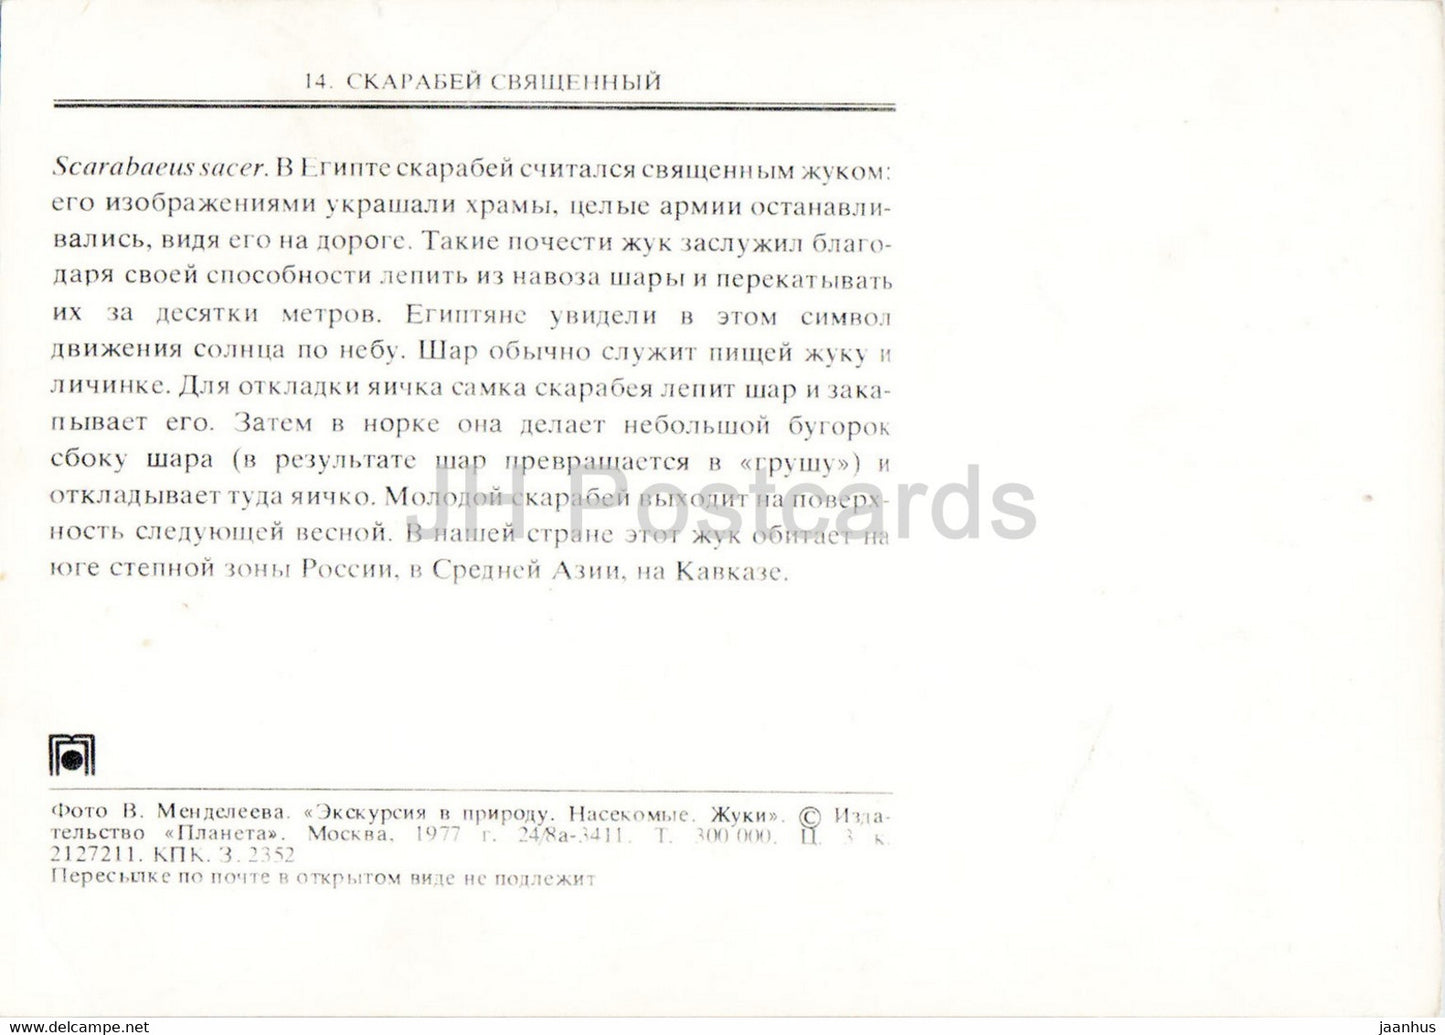 Heiliger Skarabäus - Scarabaeus sacer - Insekten - 1977 - Russland UdSSR - unbenutzt